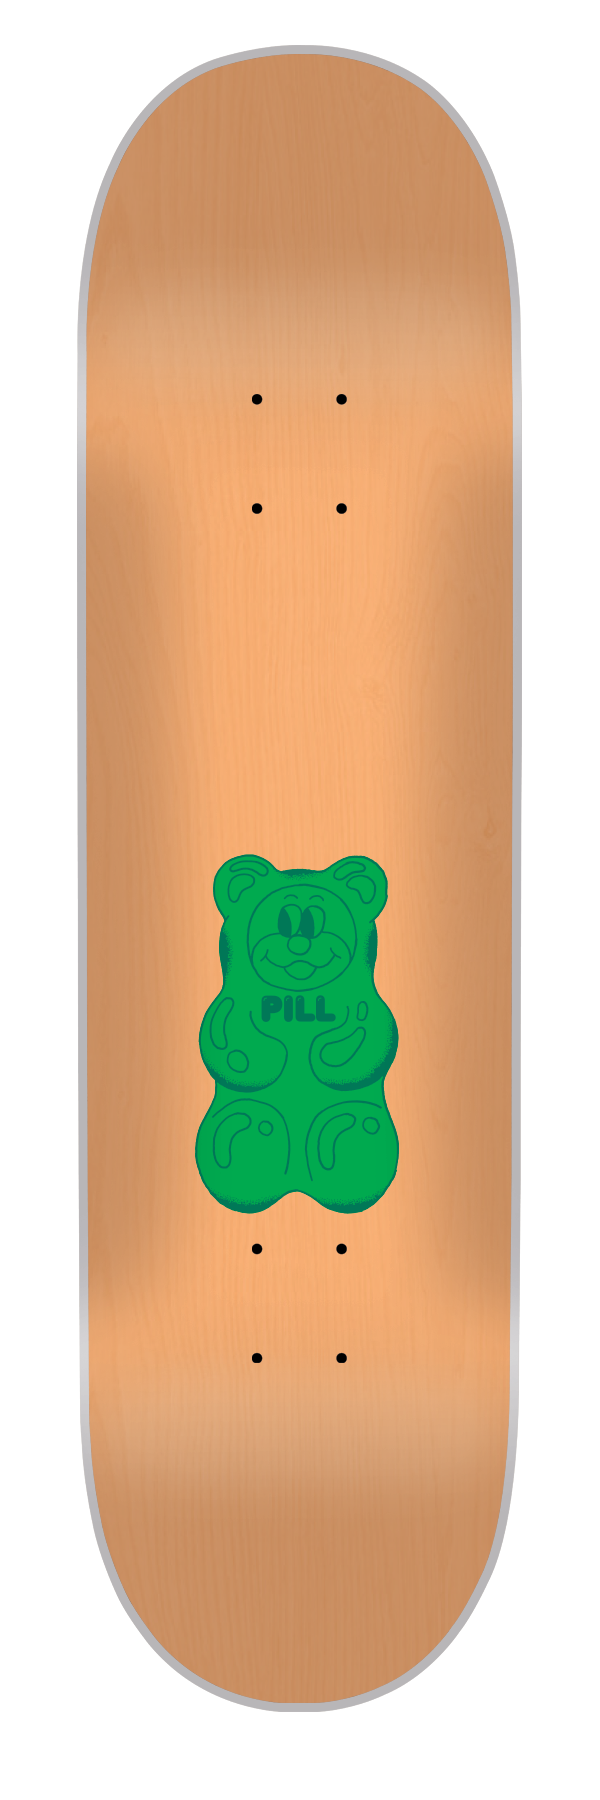 Pill - Tabla Gummy Bear Green 8.25x32 - Lo Mejor De The Pill Company - Solo Por $29990! Compra Ahora En Wallride Skateshop